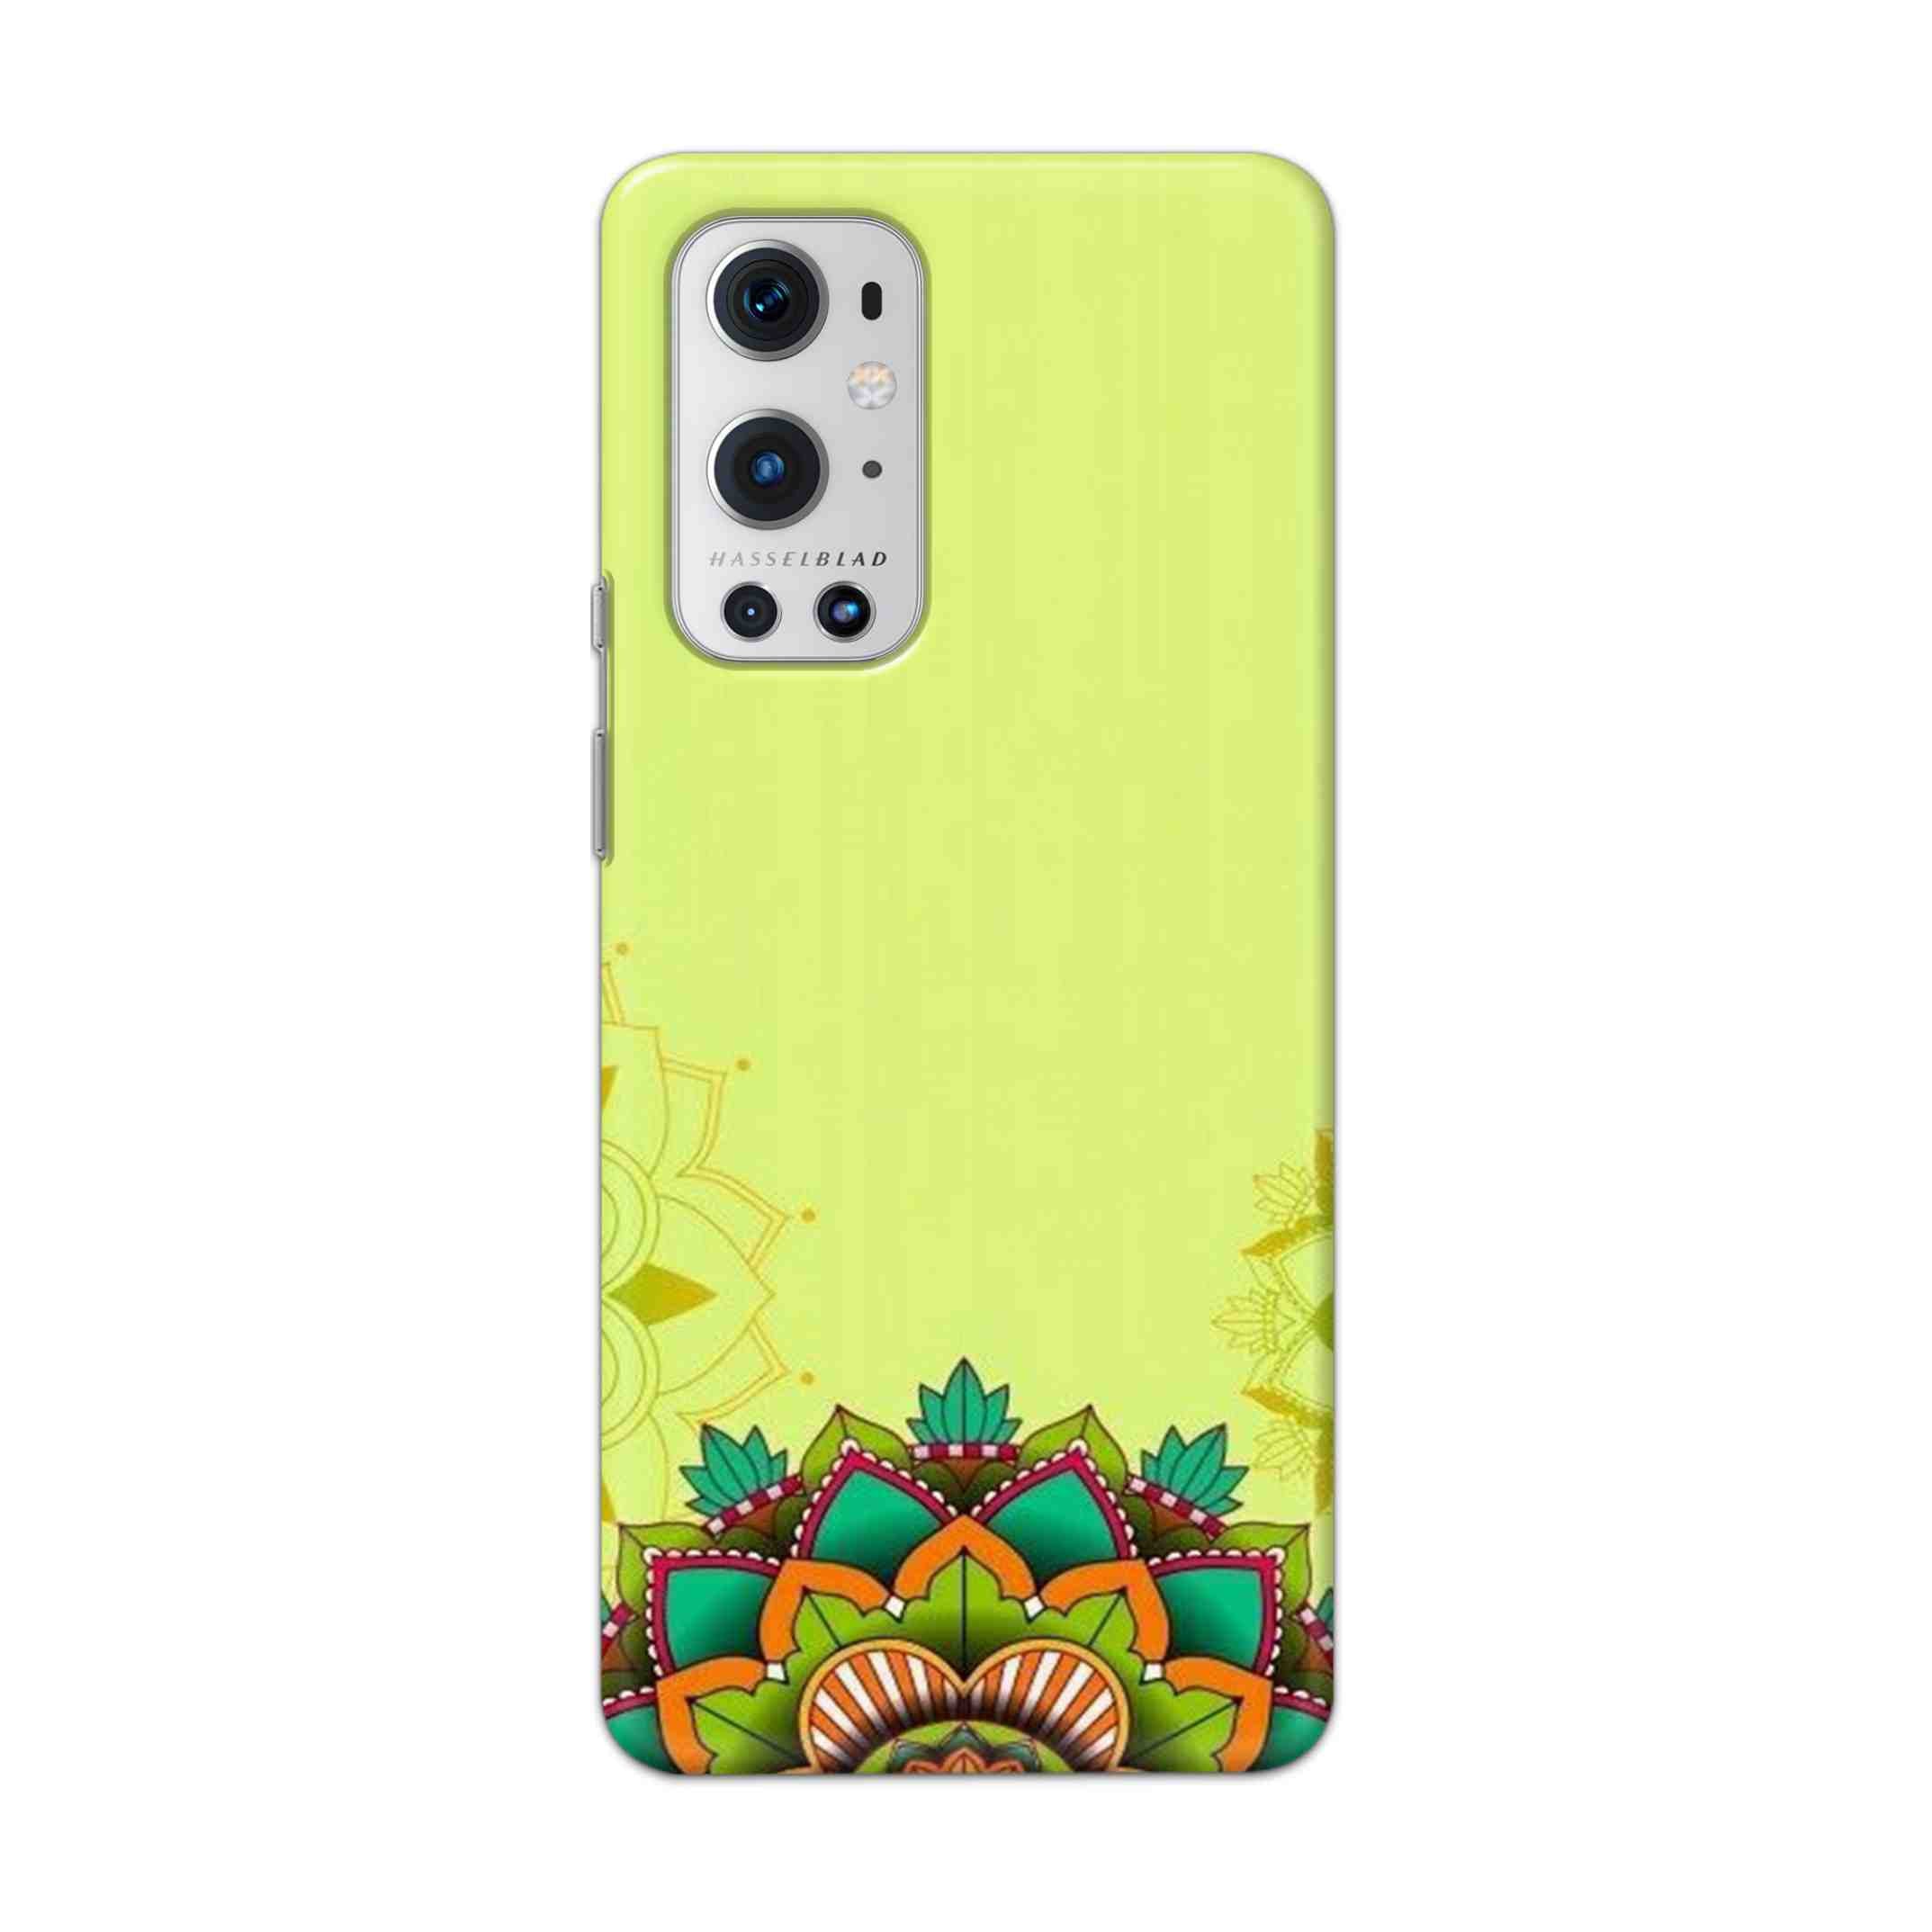 Buy Flower Mandala Hard Back Mobile Phone Case Cover For OnePlus 9 Pro Online